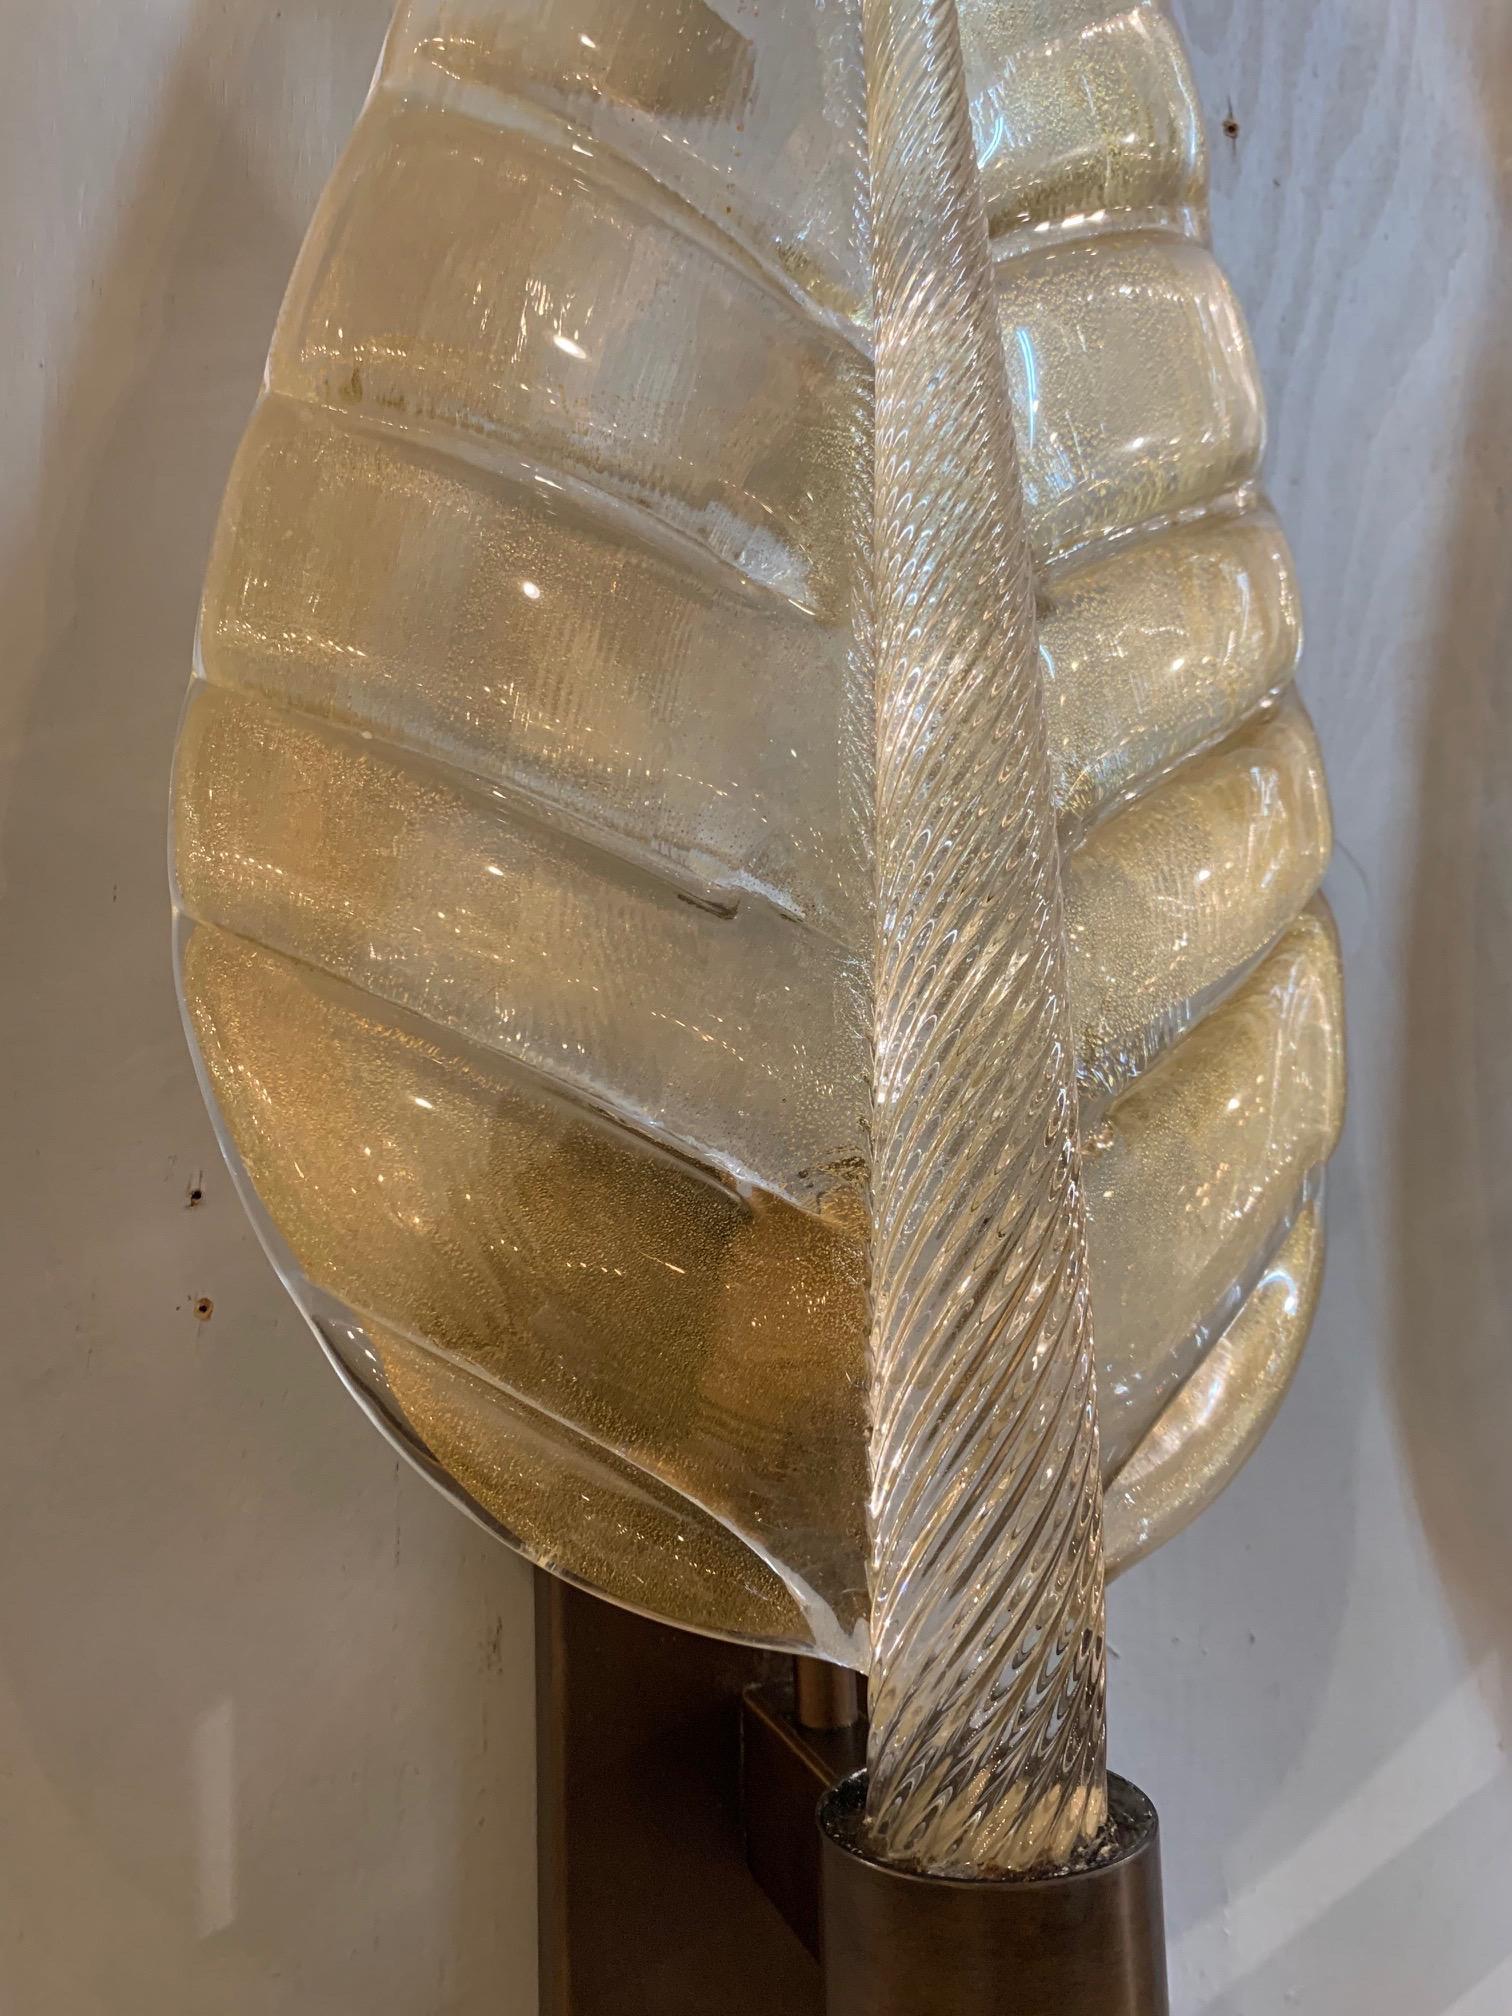 Magnifique paire d'appliques modernes de grande taille en verre de Murano en forme de feuille. De jolies mouchetures d'or sur les feuilles de verre reposant sur une jolie base en laiton. C'est une déclaration impressionnante !